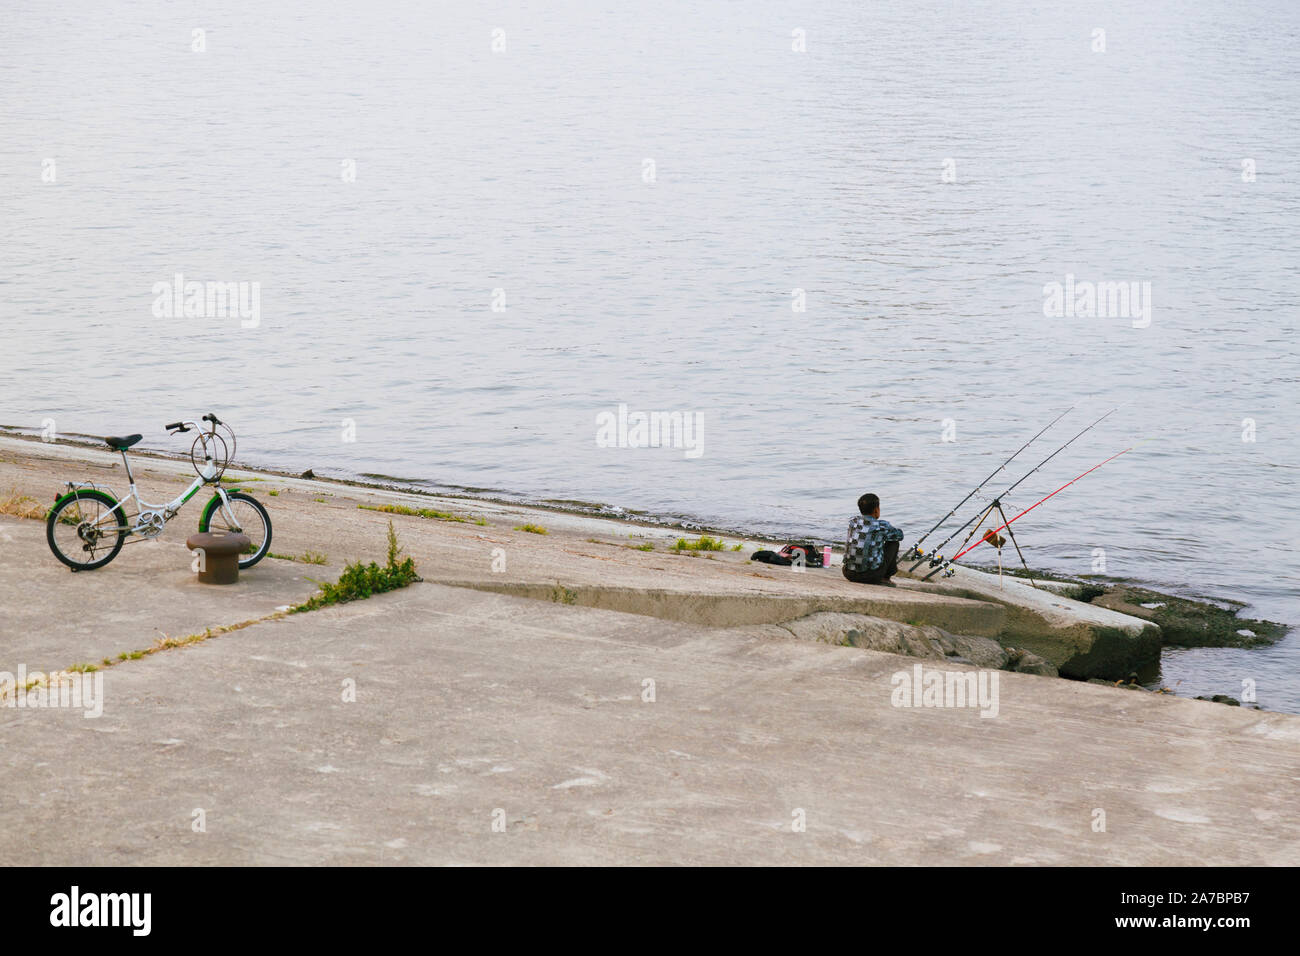 Un ricreative fisher uomo in attesa per la sua cattura da parte del fiume e la sua bicicletta vicino parcheggiata. Foto Stock